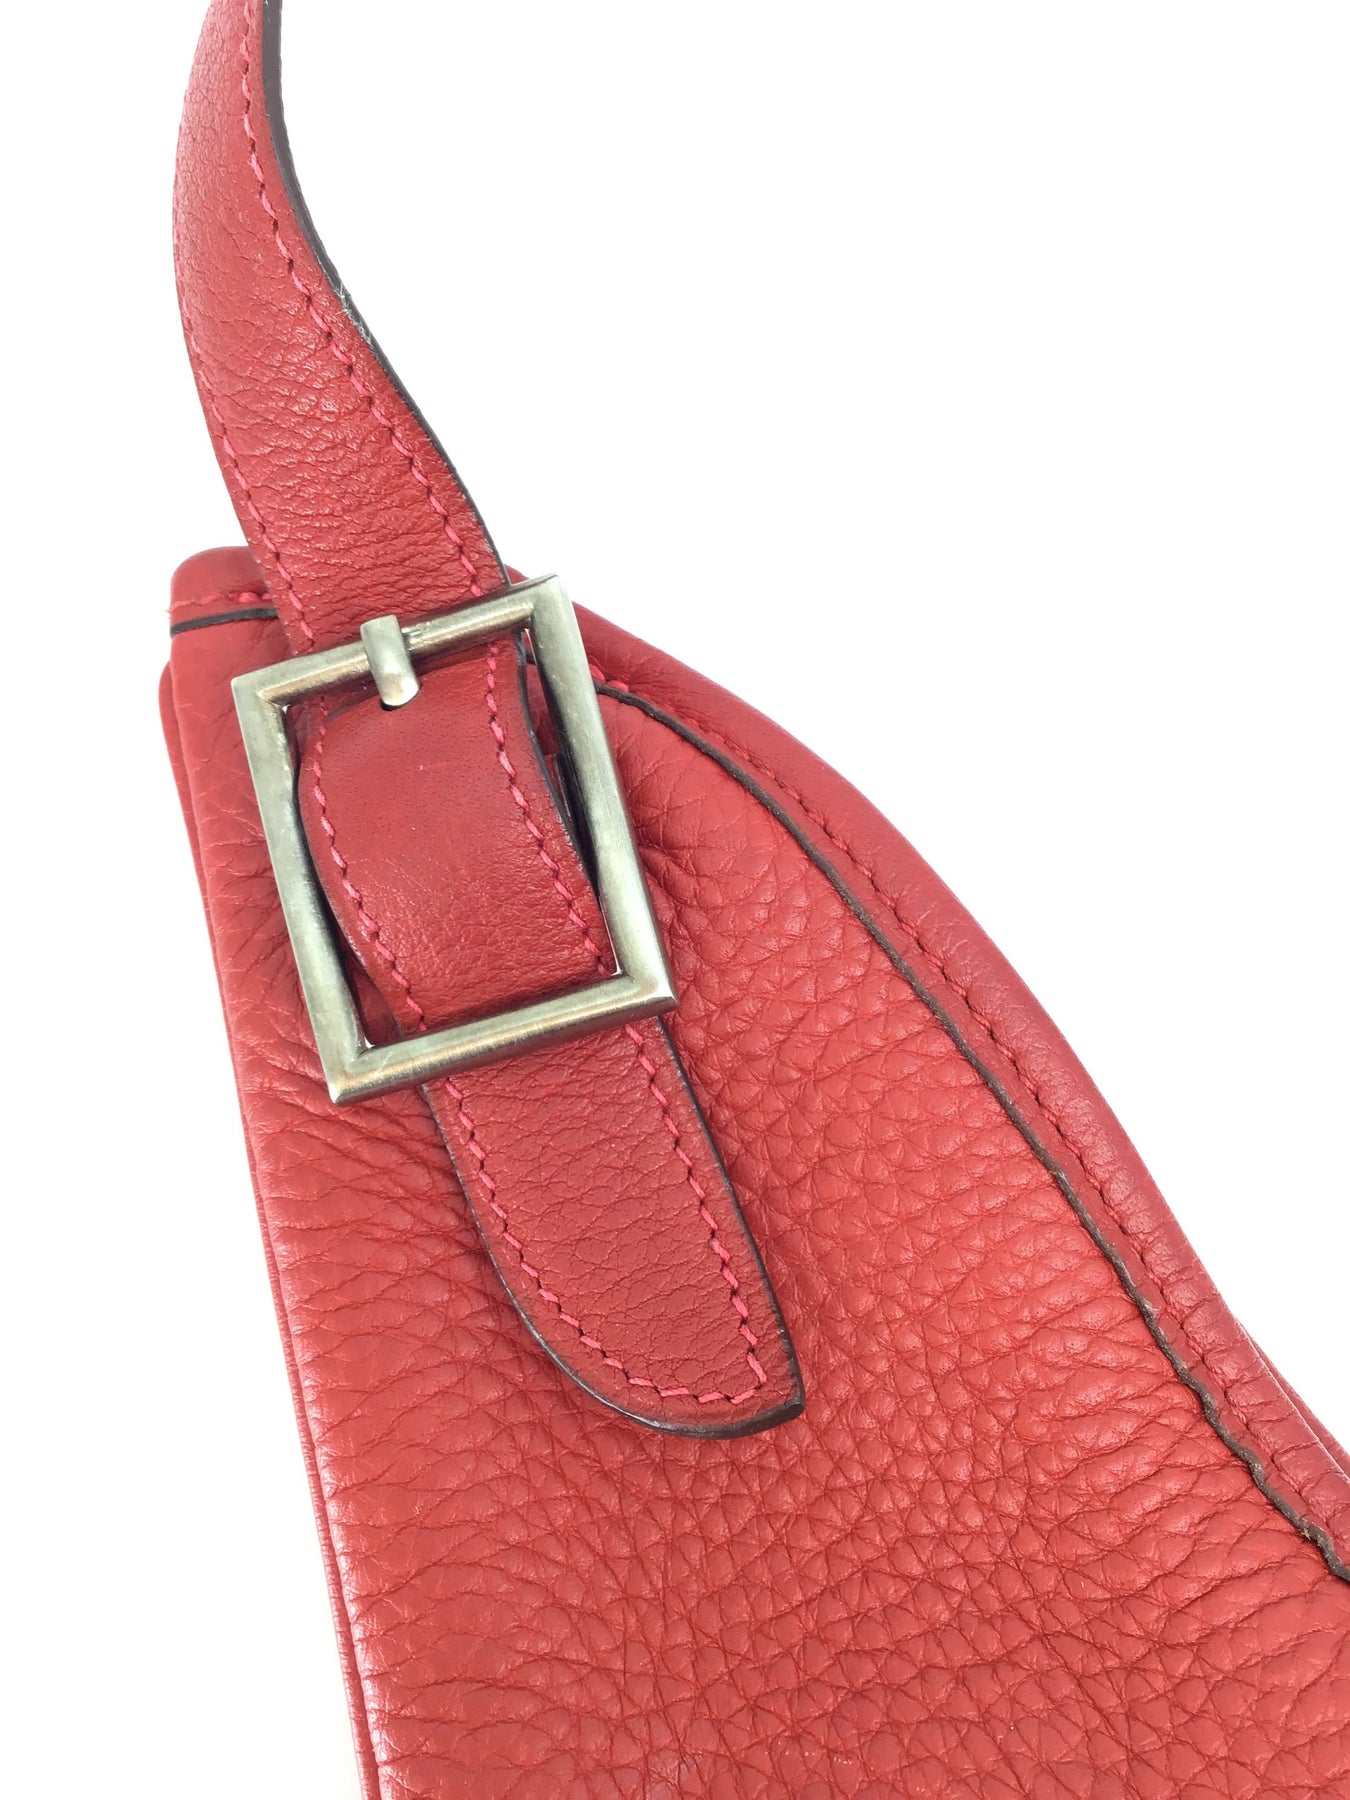 Hermès Massai Handbag 318698